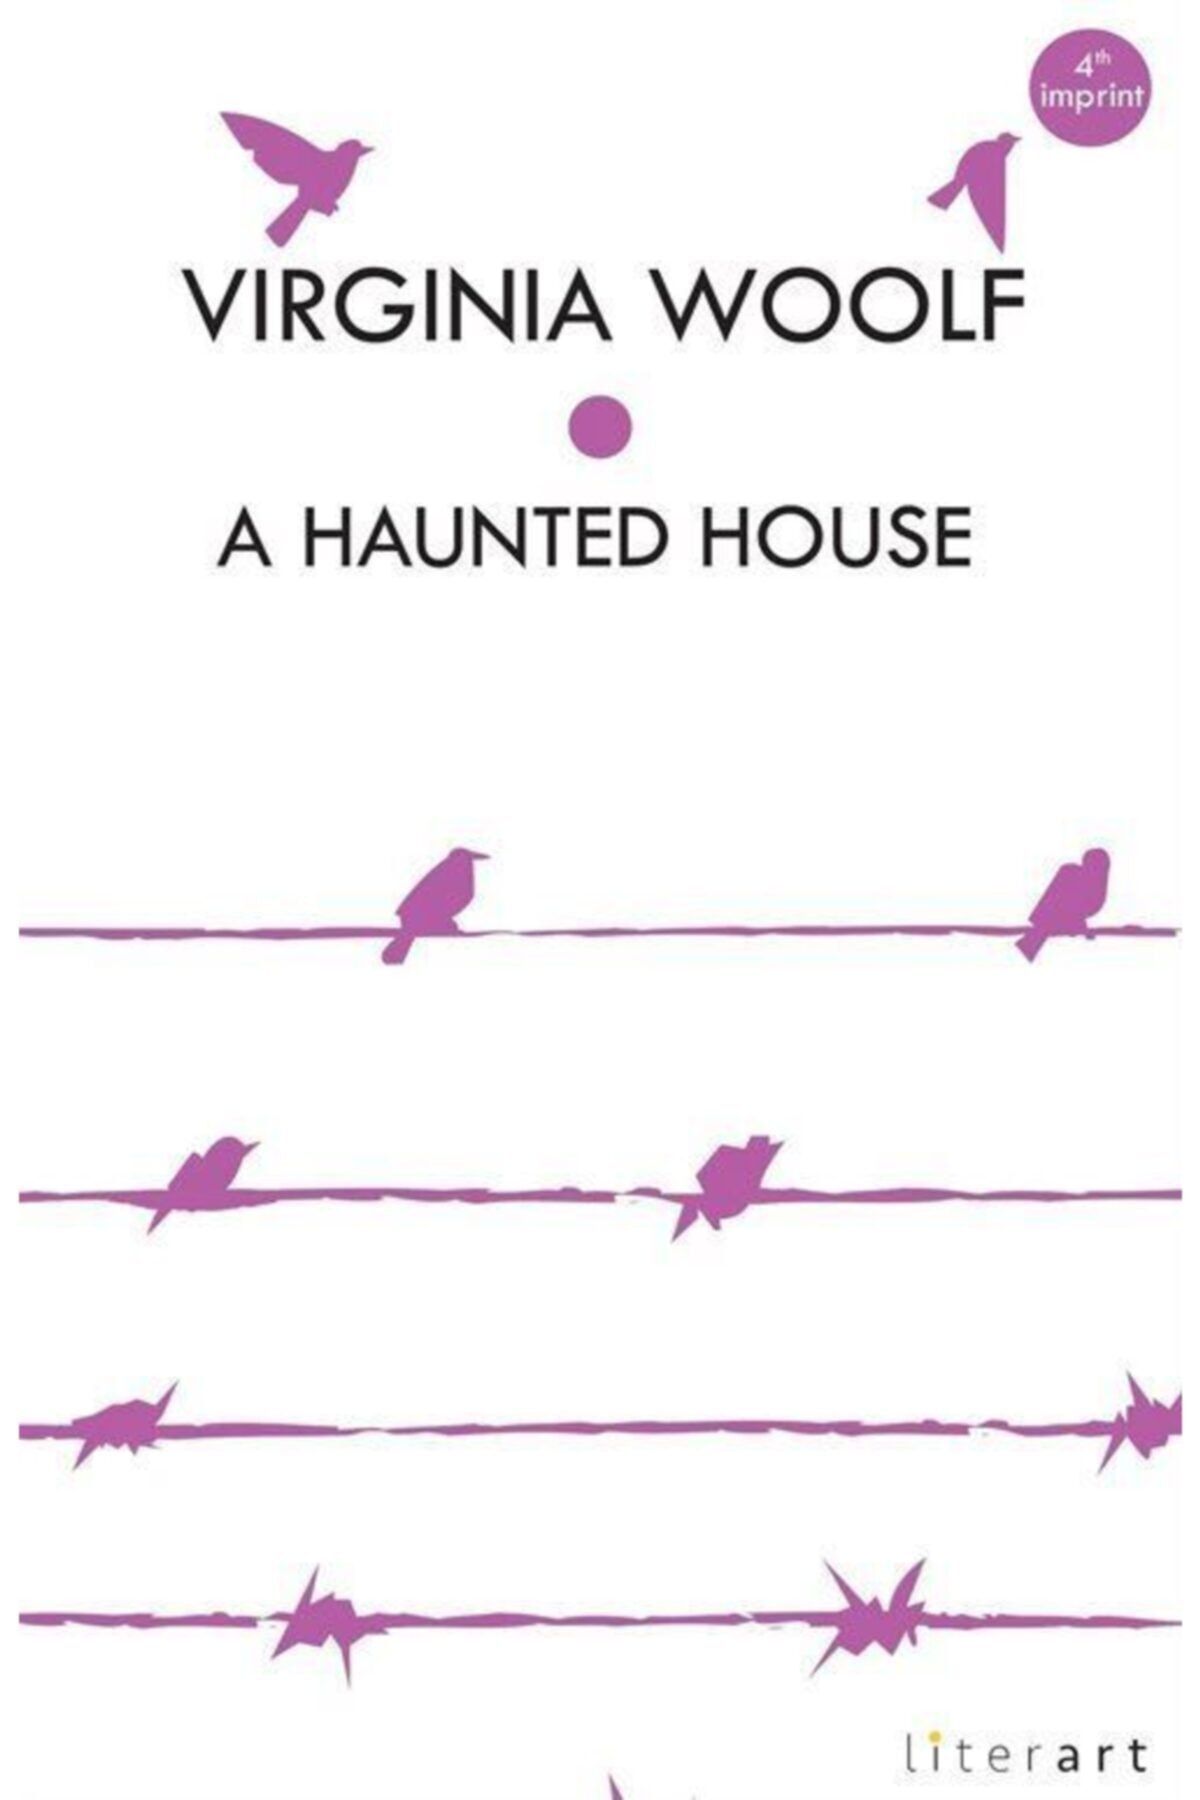 Literart Yayınları A Haunted House - Vırgınıa Woolf - Virginia Woolf